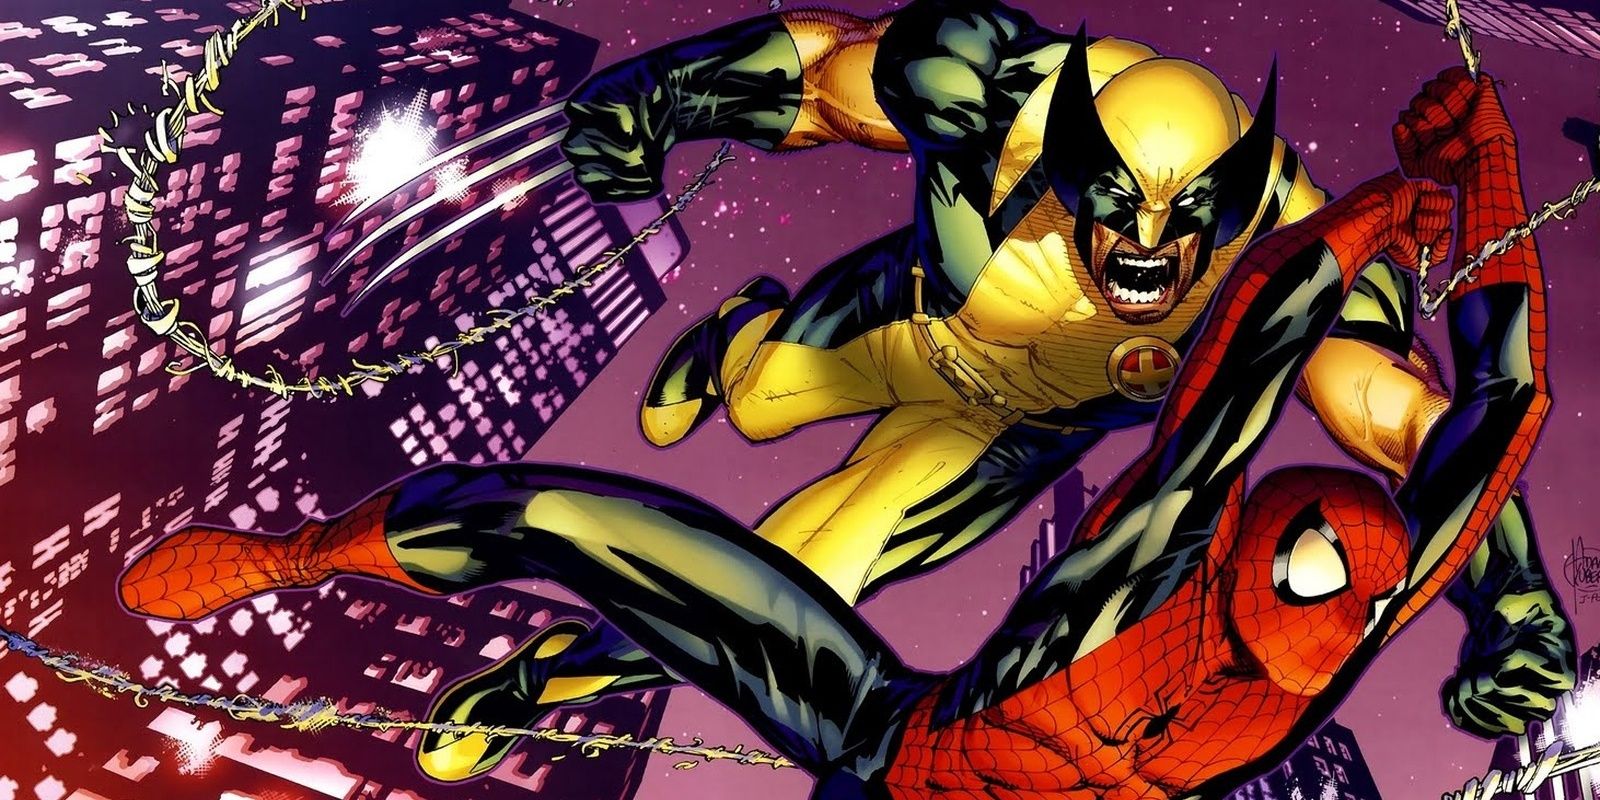 Spider-Man and Wolverine